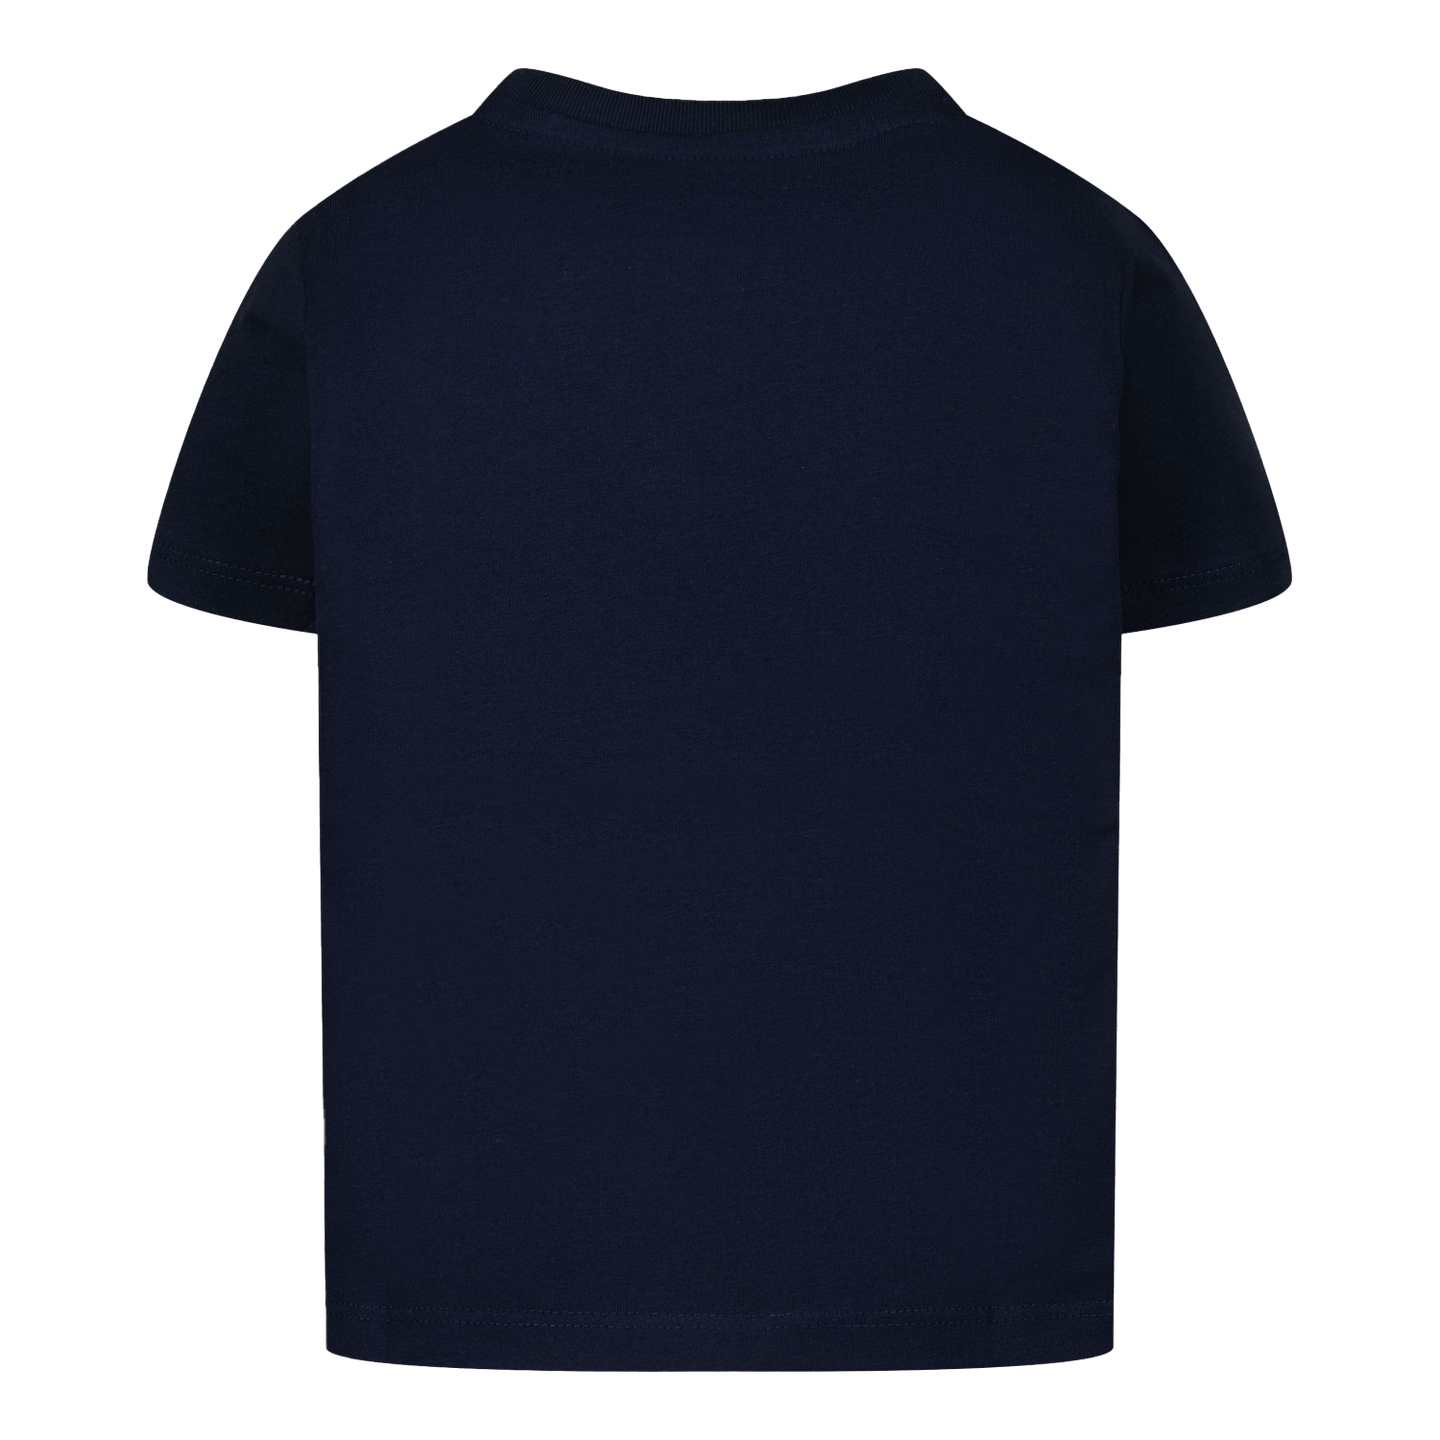 Ralph Lauren Kinder Jongens T-Shirt Navy 2Y